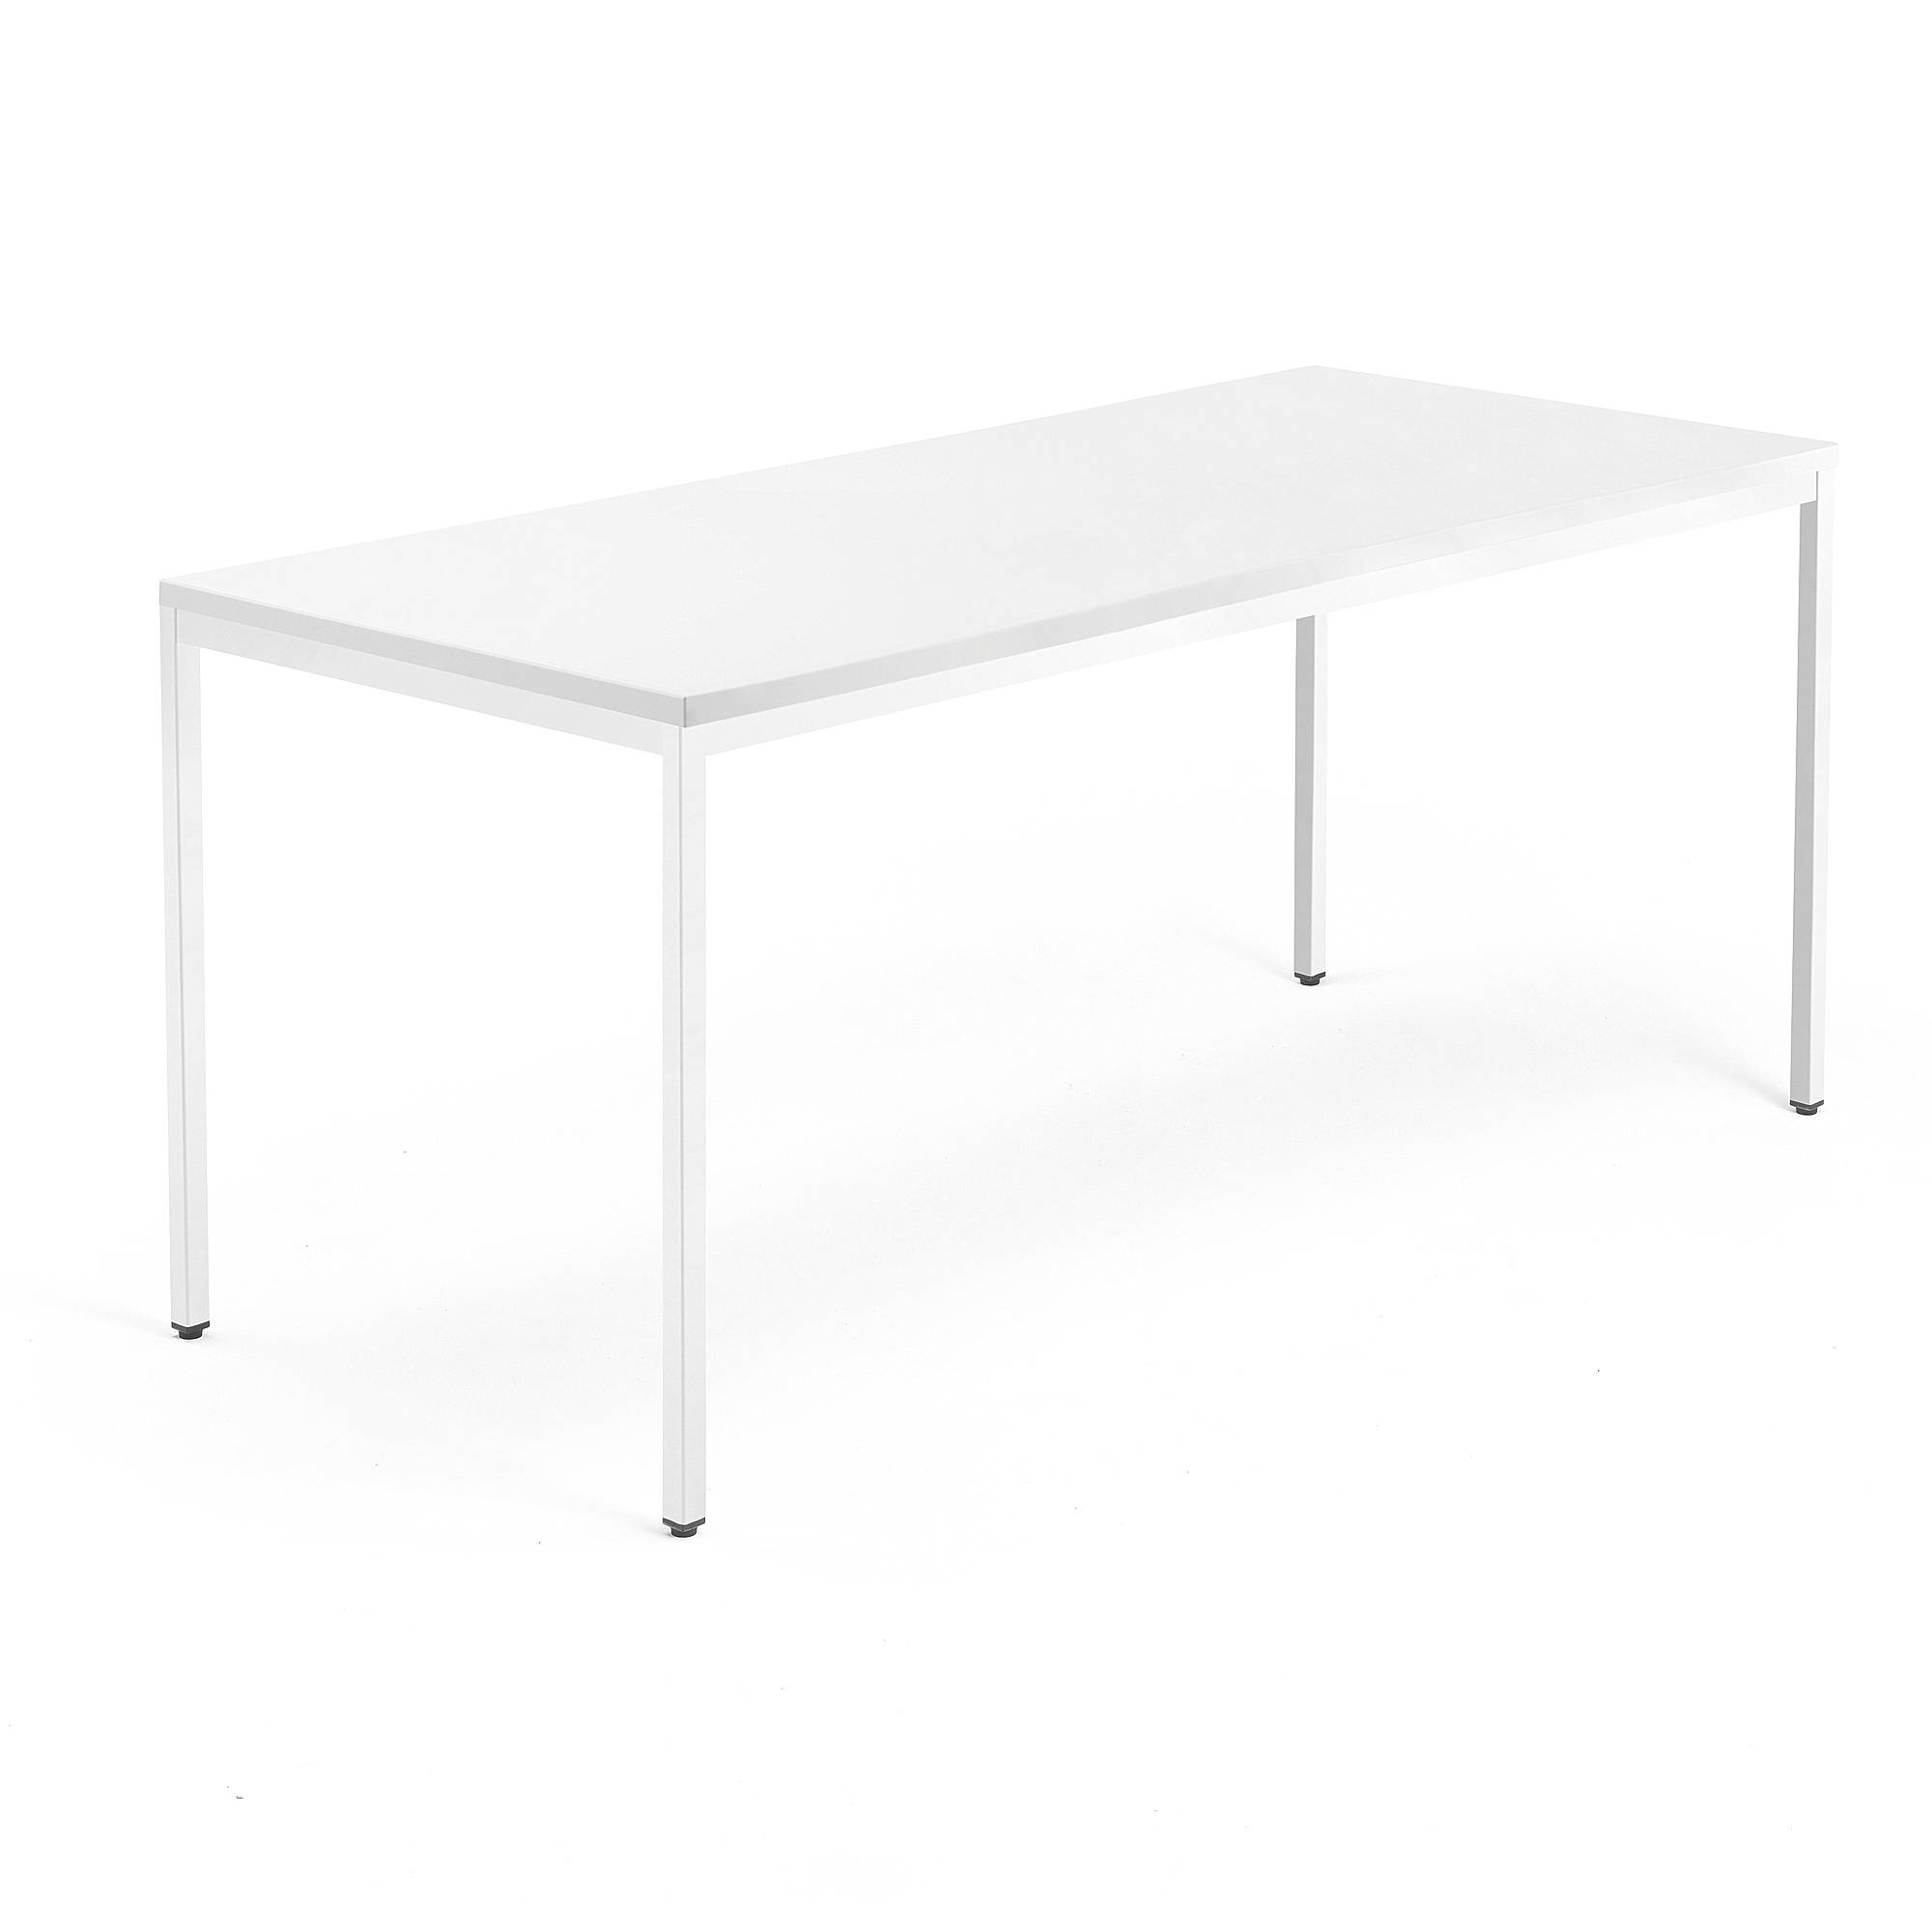 Psací stůl QBUS, 4 nohy, 1800x800 mm, bílý rám, bílá